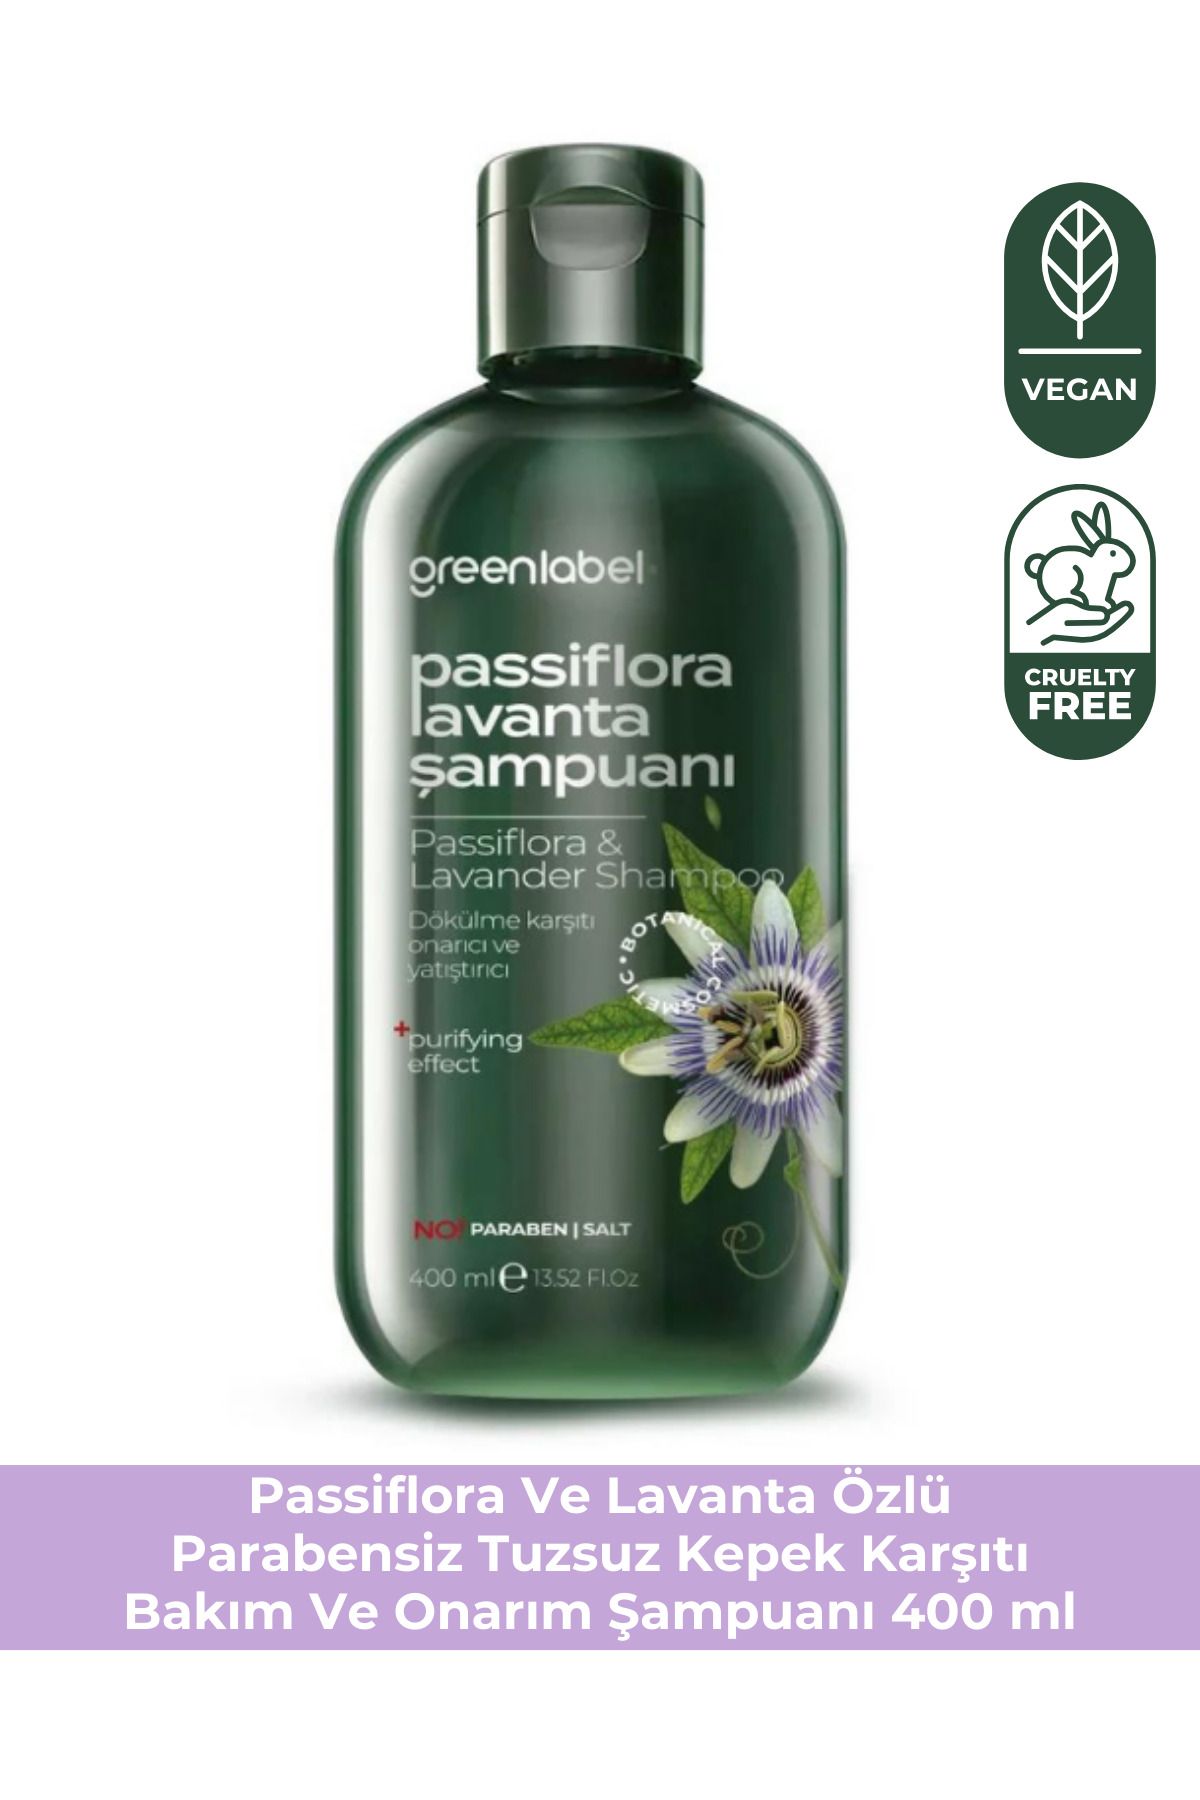 Green Label Passiflora Ve Lavanta Özlü Parabensiz Tuzsuz Kepek Karşıtı Bakım Ve Onarım Şampuanı 400ml